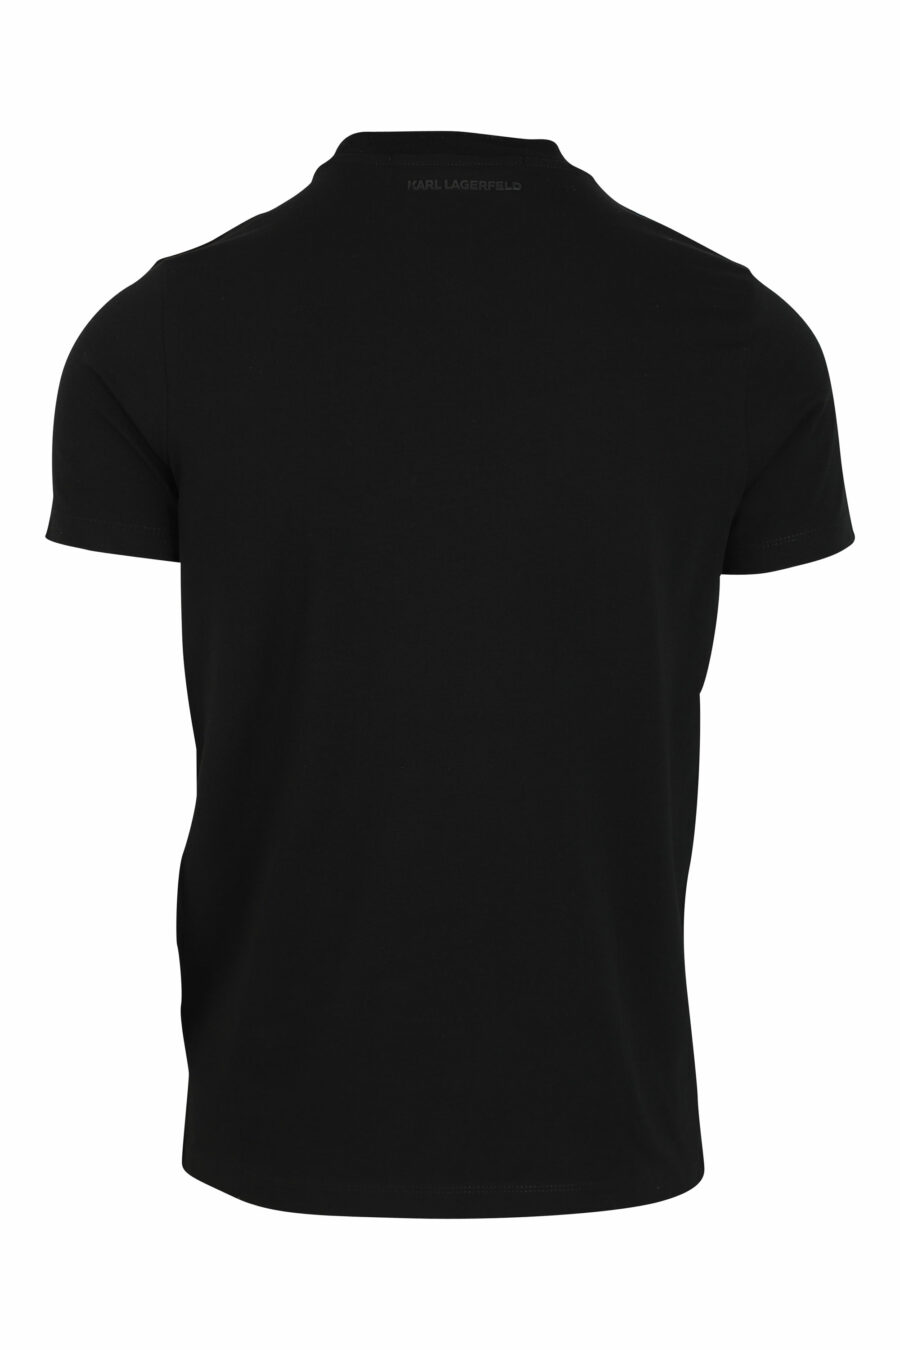 T-shirt preta com maxilogo em silhueta azul - 4062226292504 2